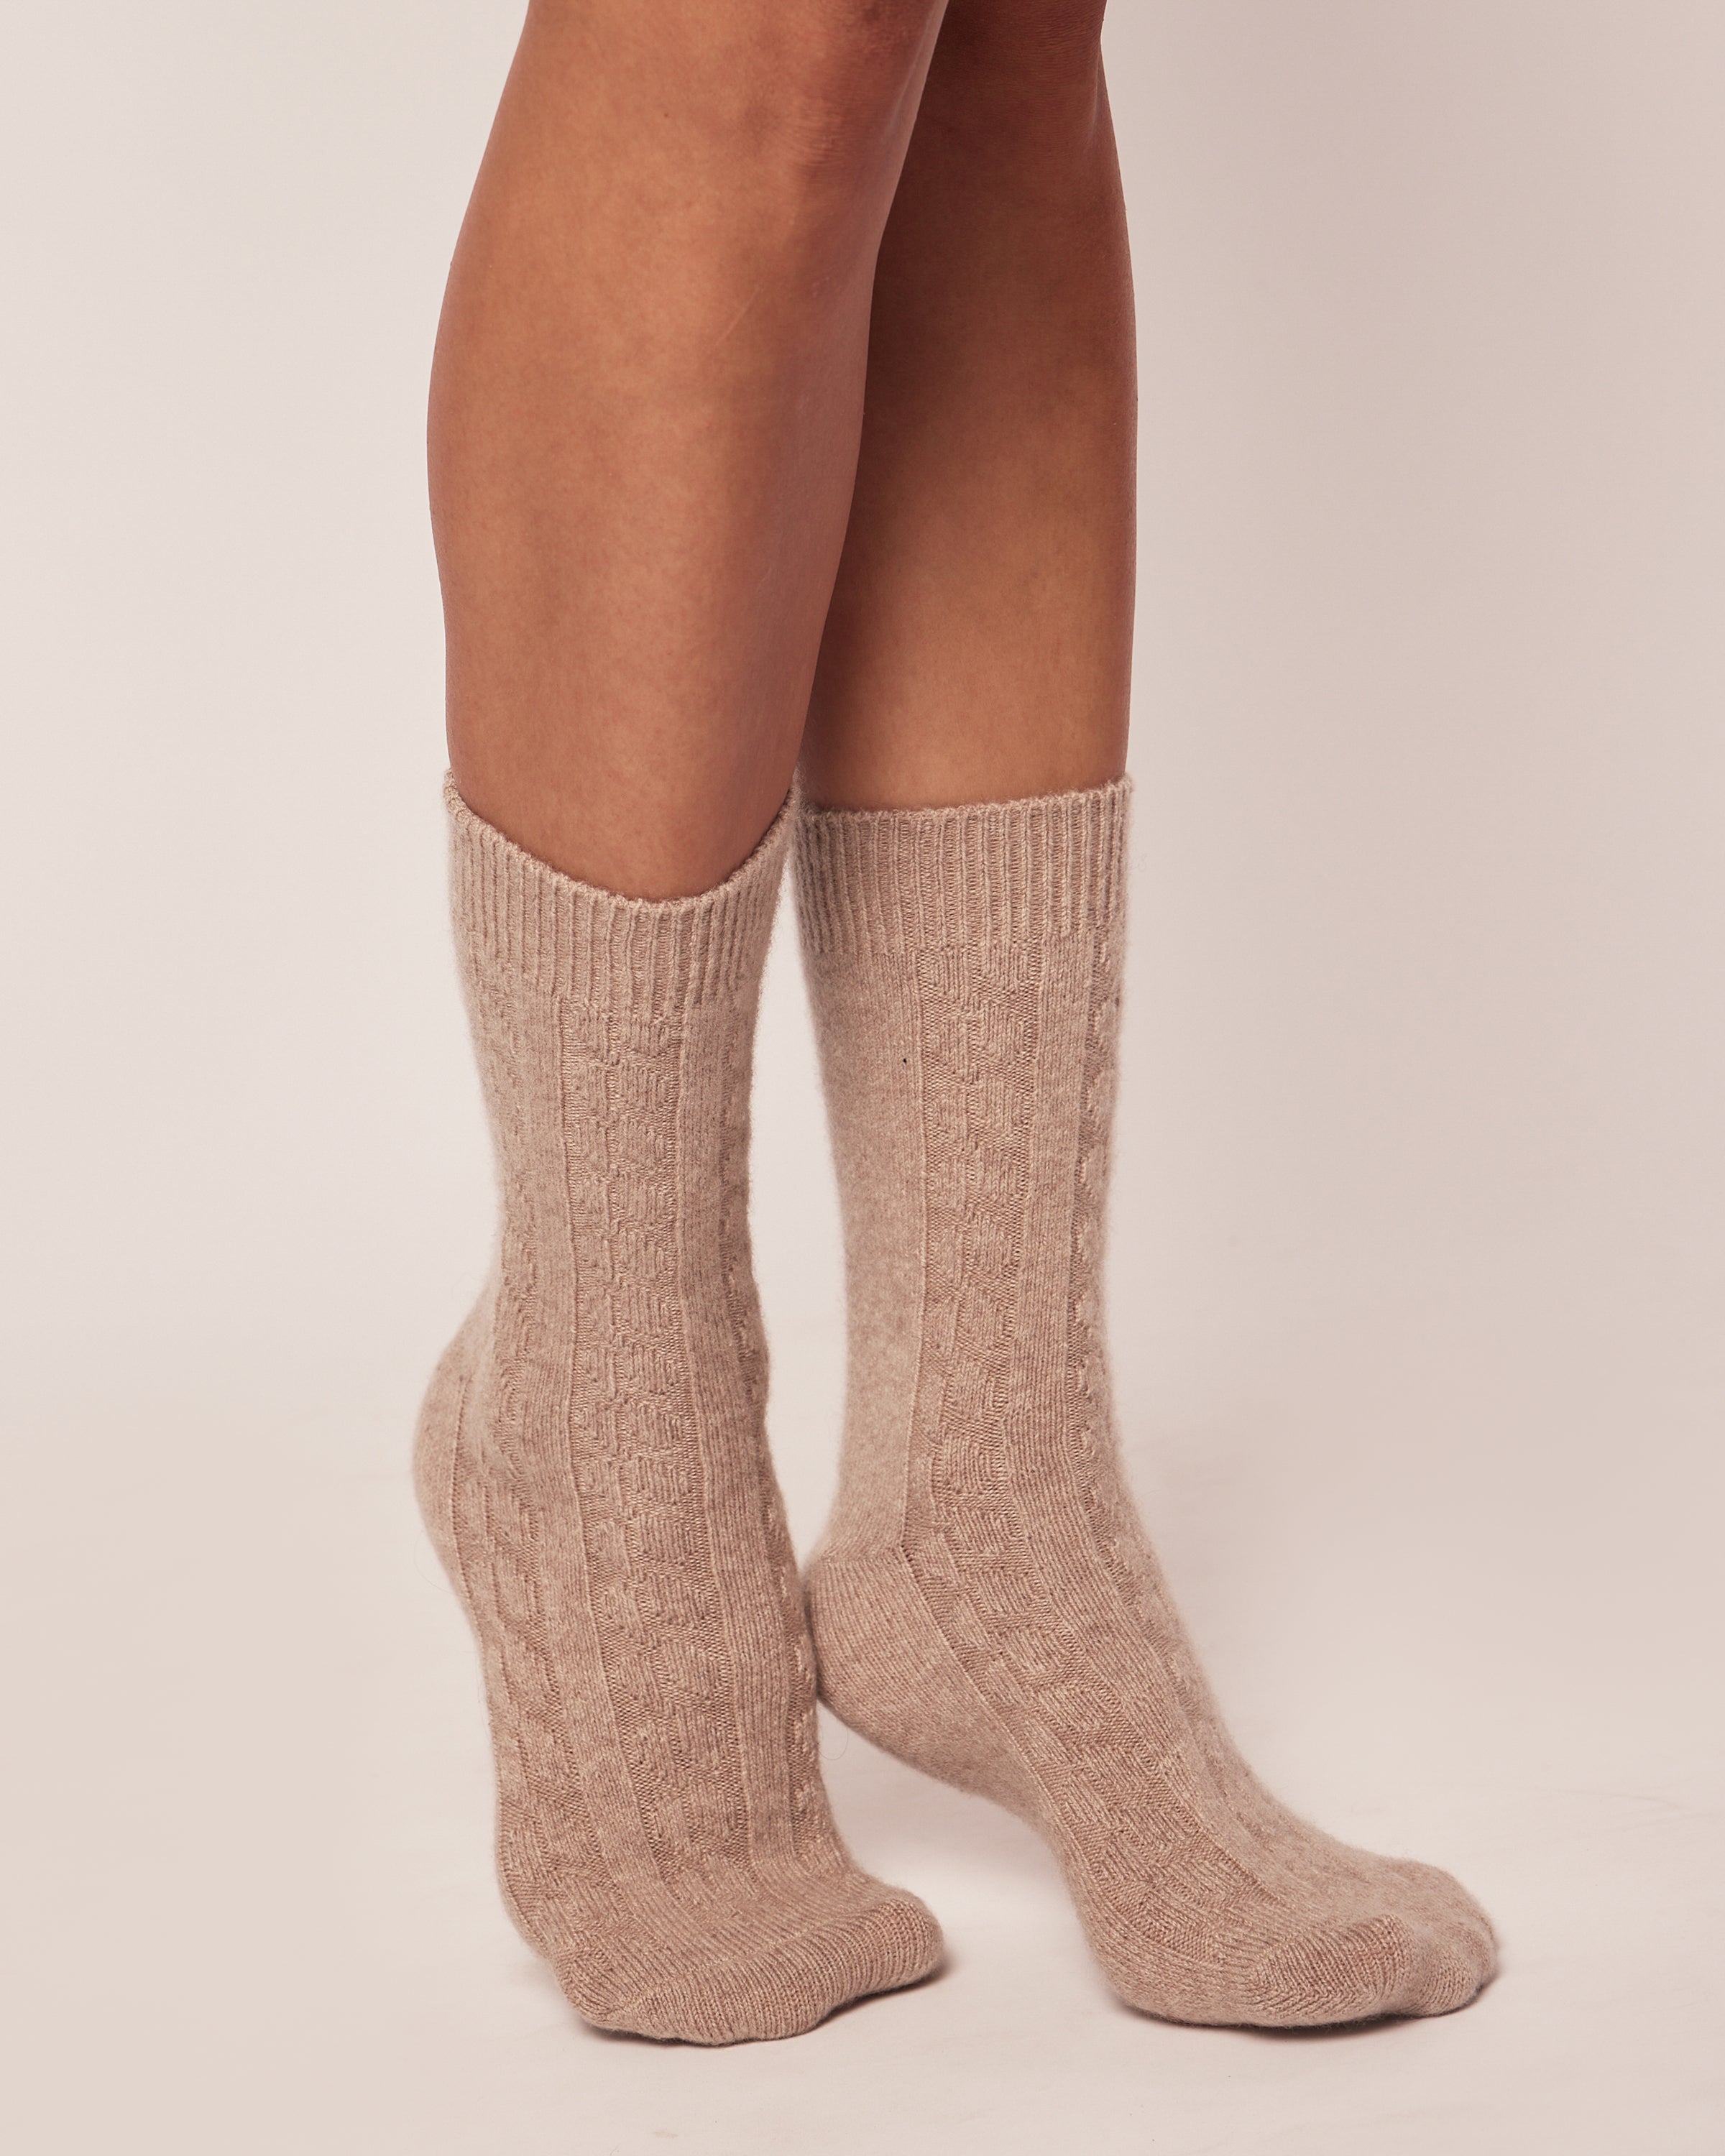 100% Cashmere Women's Socks in Beige